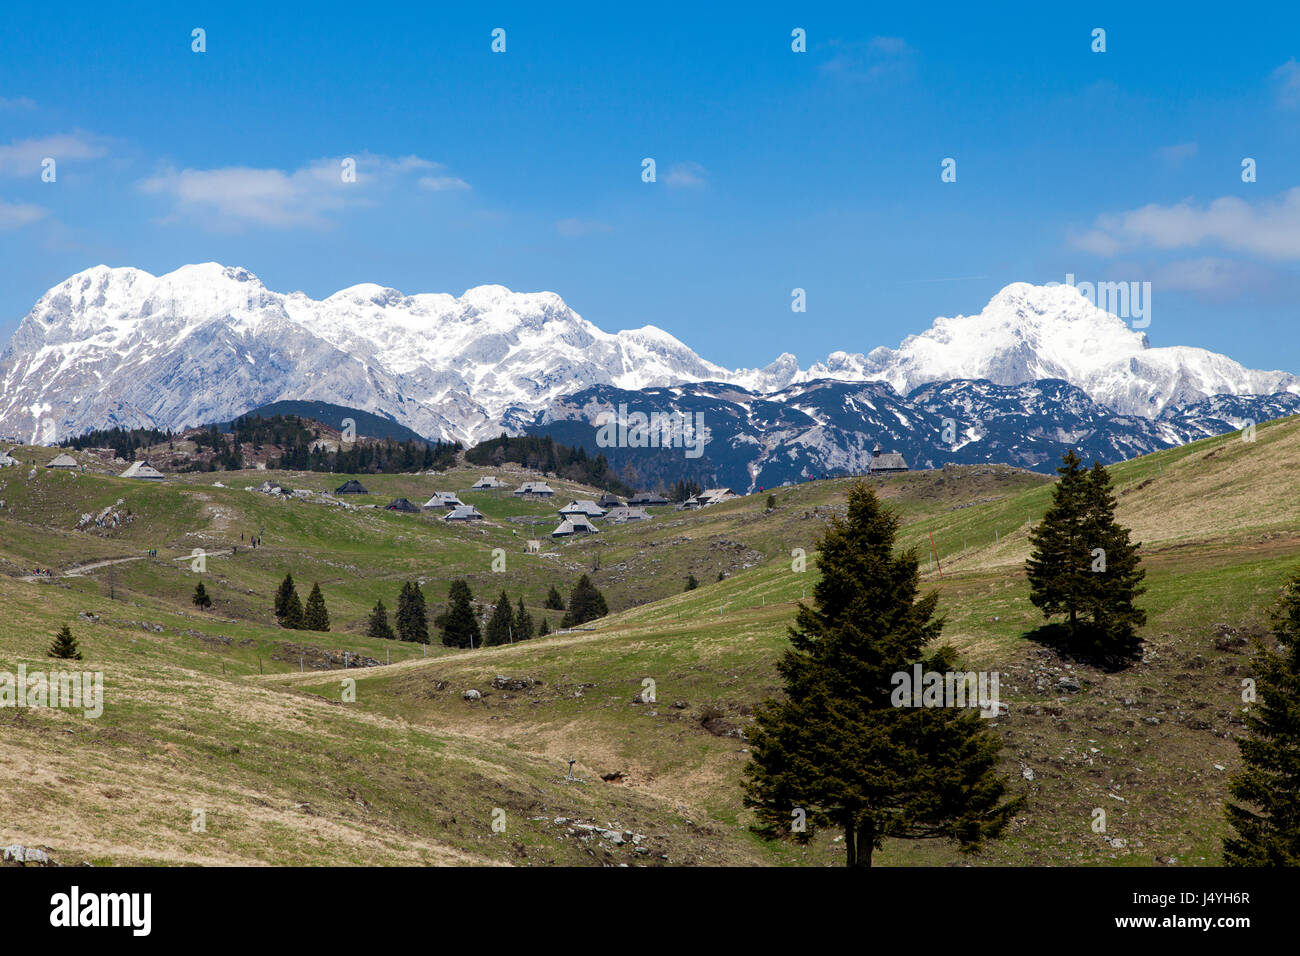 Schöne Aussicht auf Hirte Dorf, Tableland Velika Planina in Slowenien, vor blauem Himmel und hohen Bergen mit Schnee bedeckt. Platz für text Stockfoto